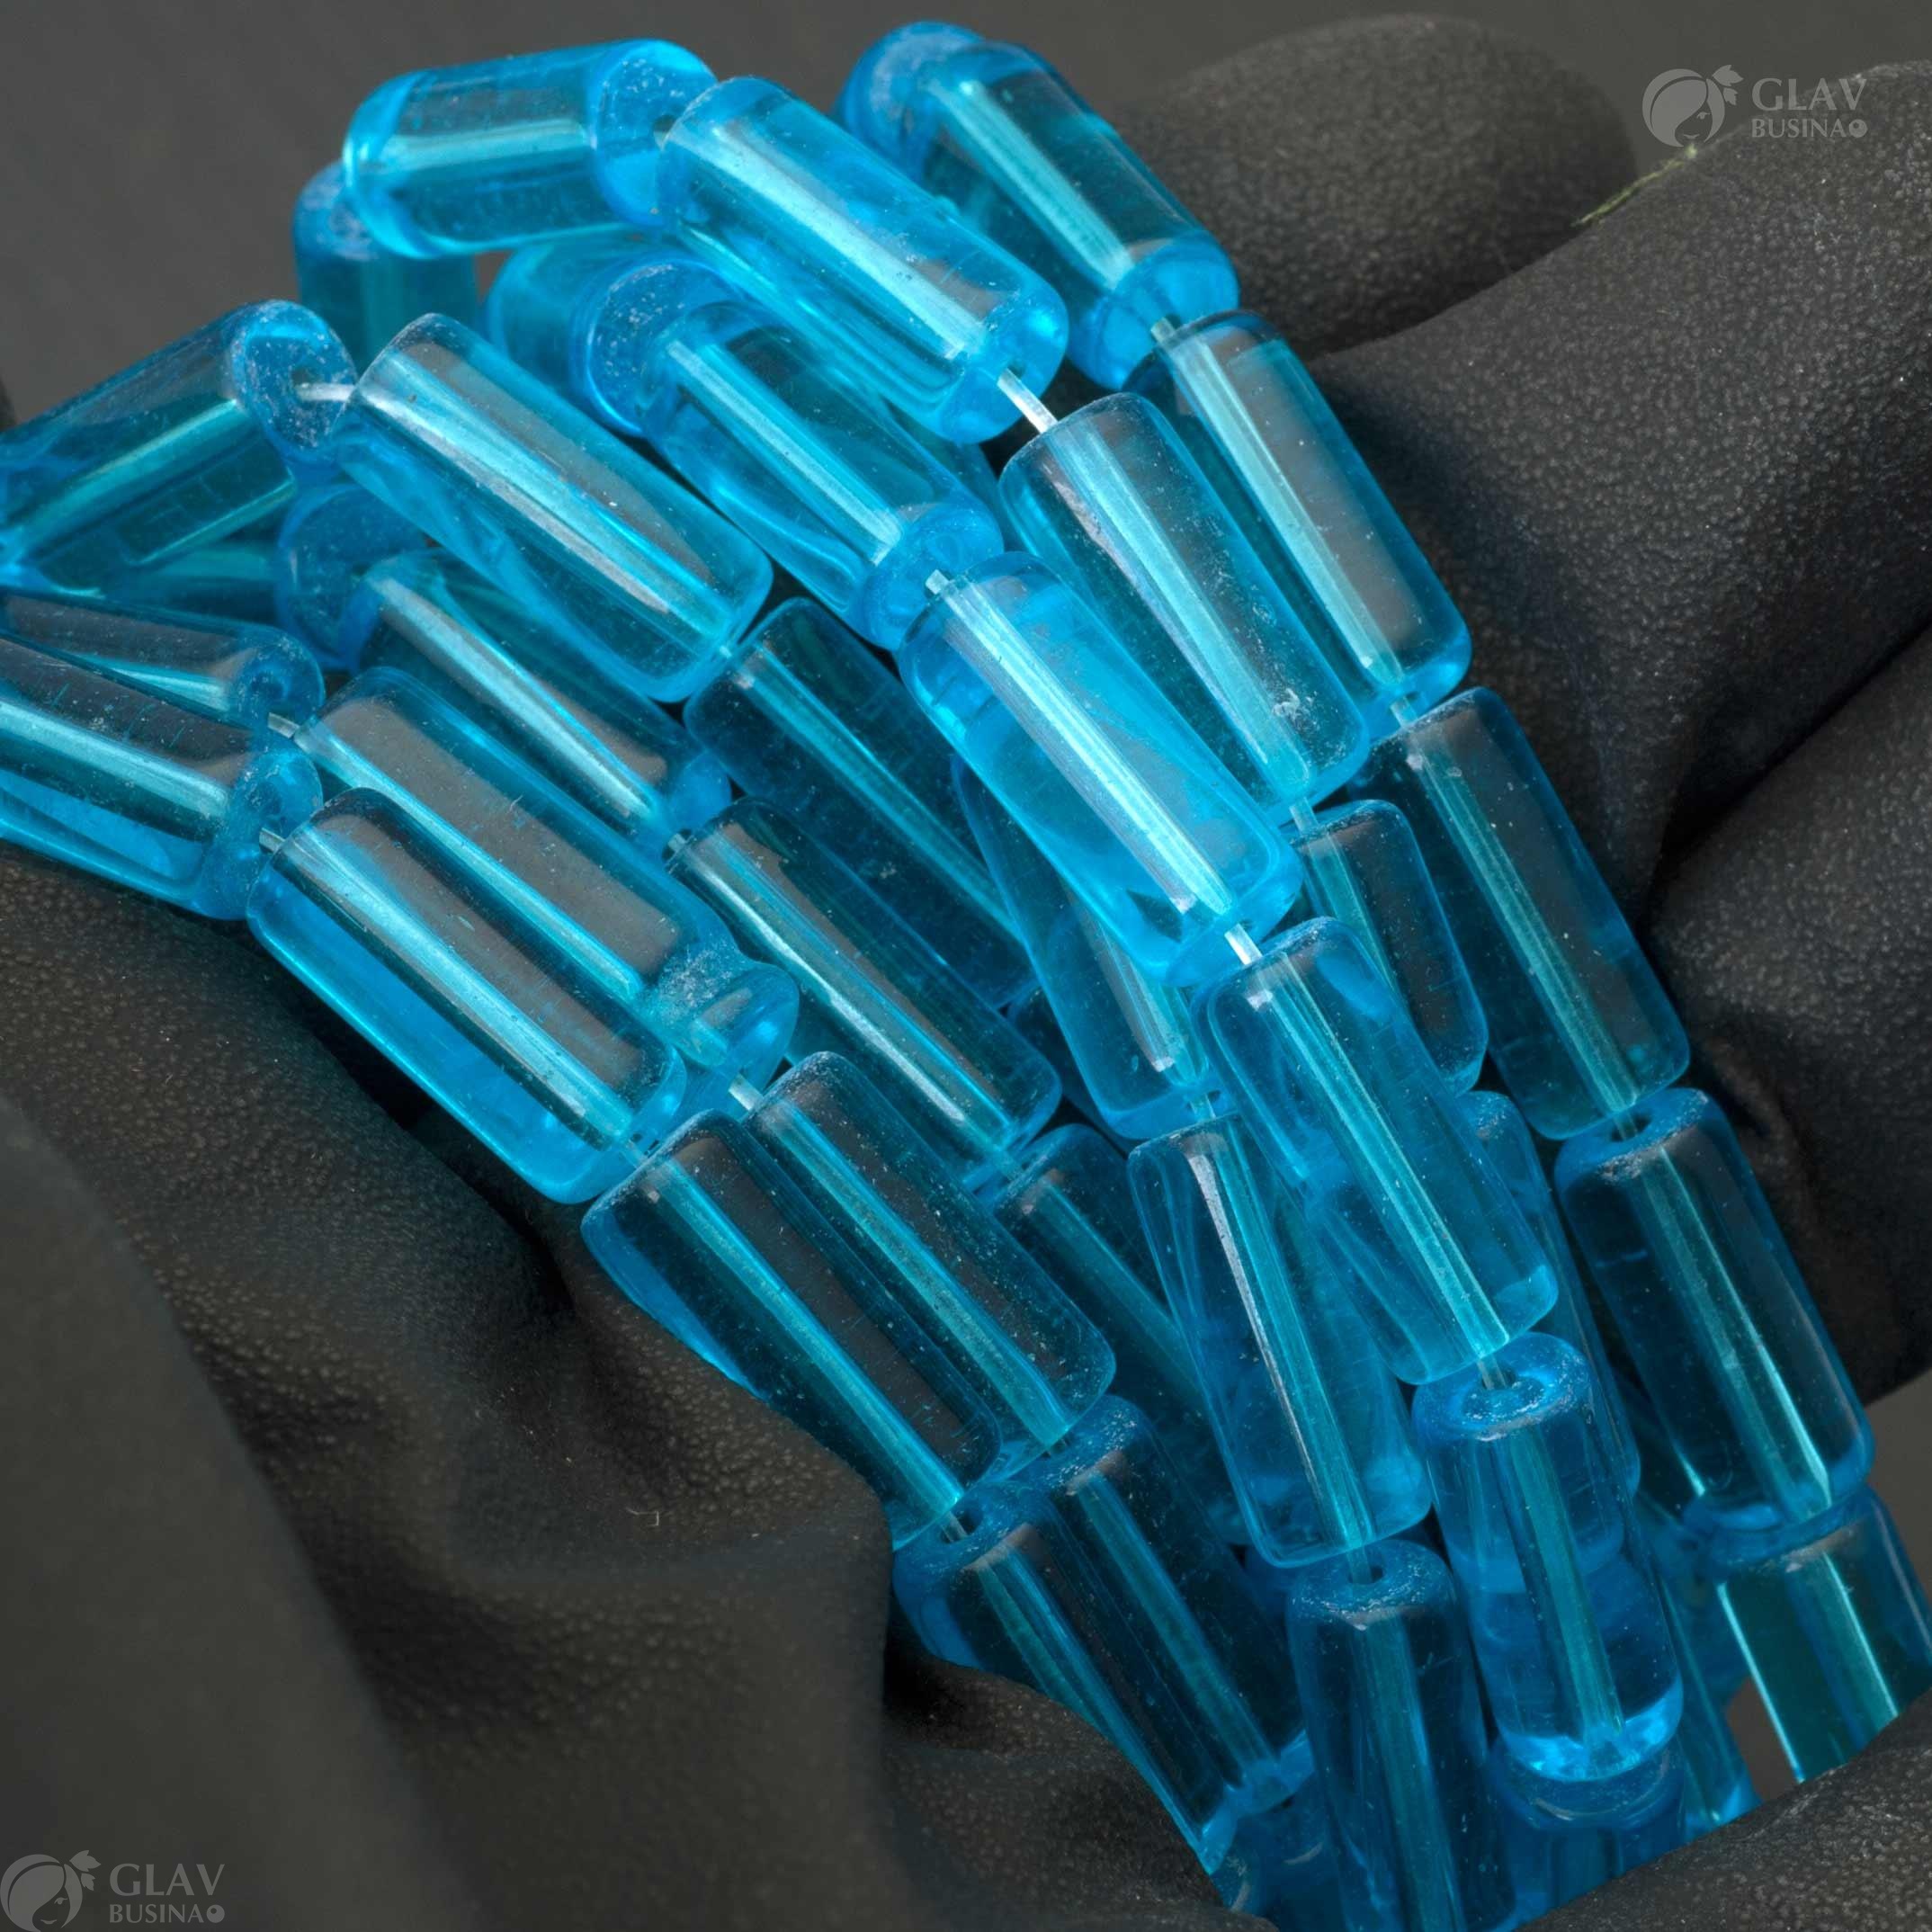 Бусины-цилиндры из голубого стекла, размером 15х6мм и отверстием диаметром 1мм. Идеальны для создания украшений и акцентов в ручной работе.